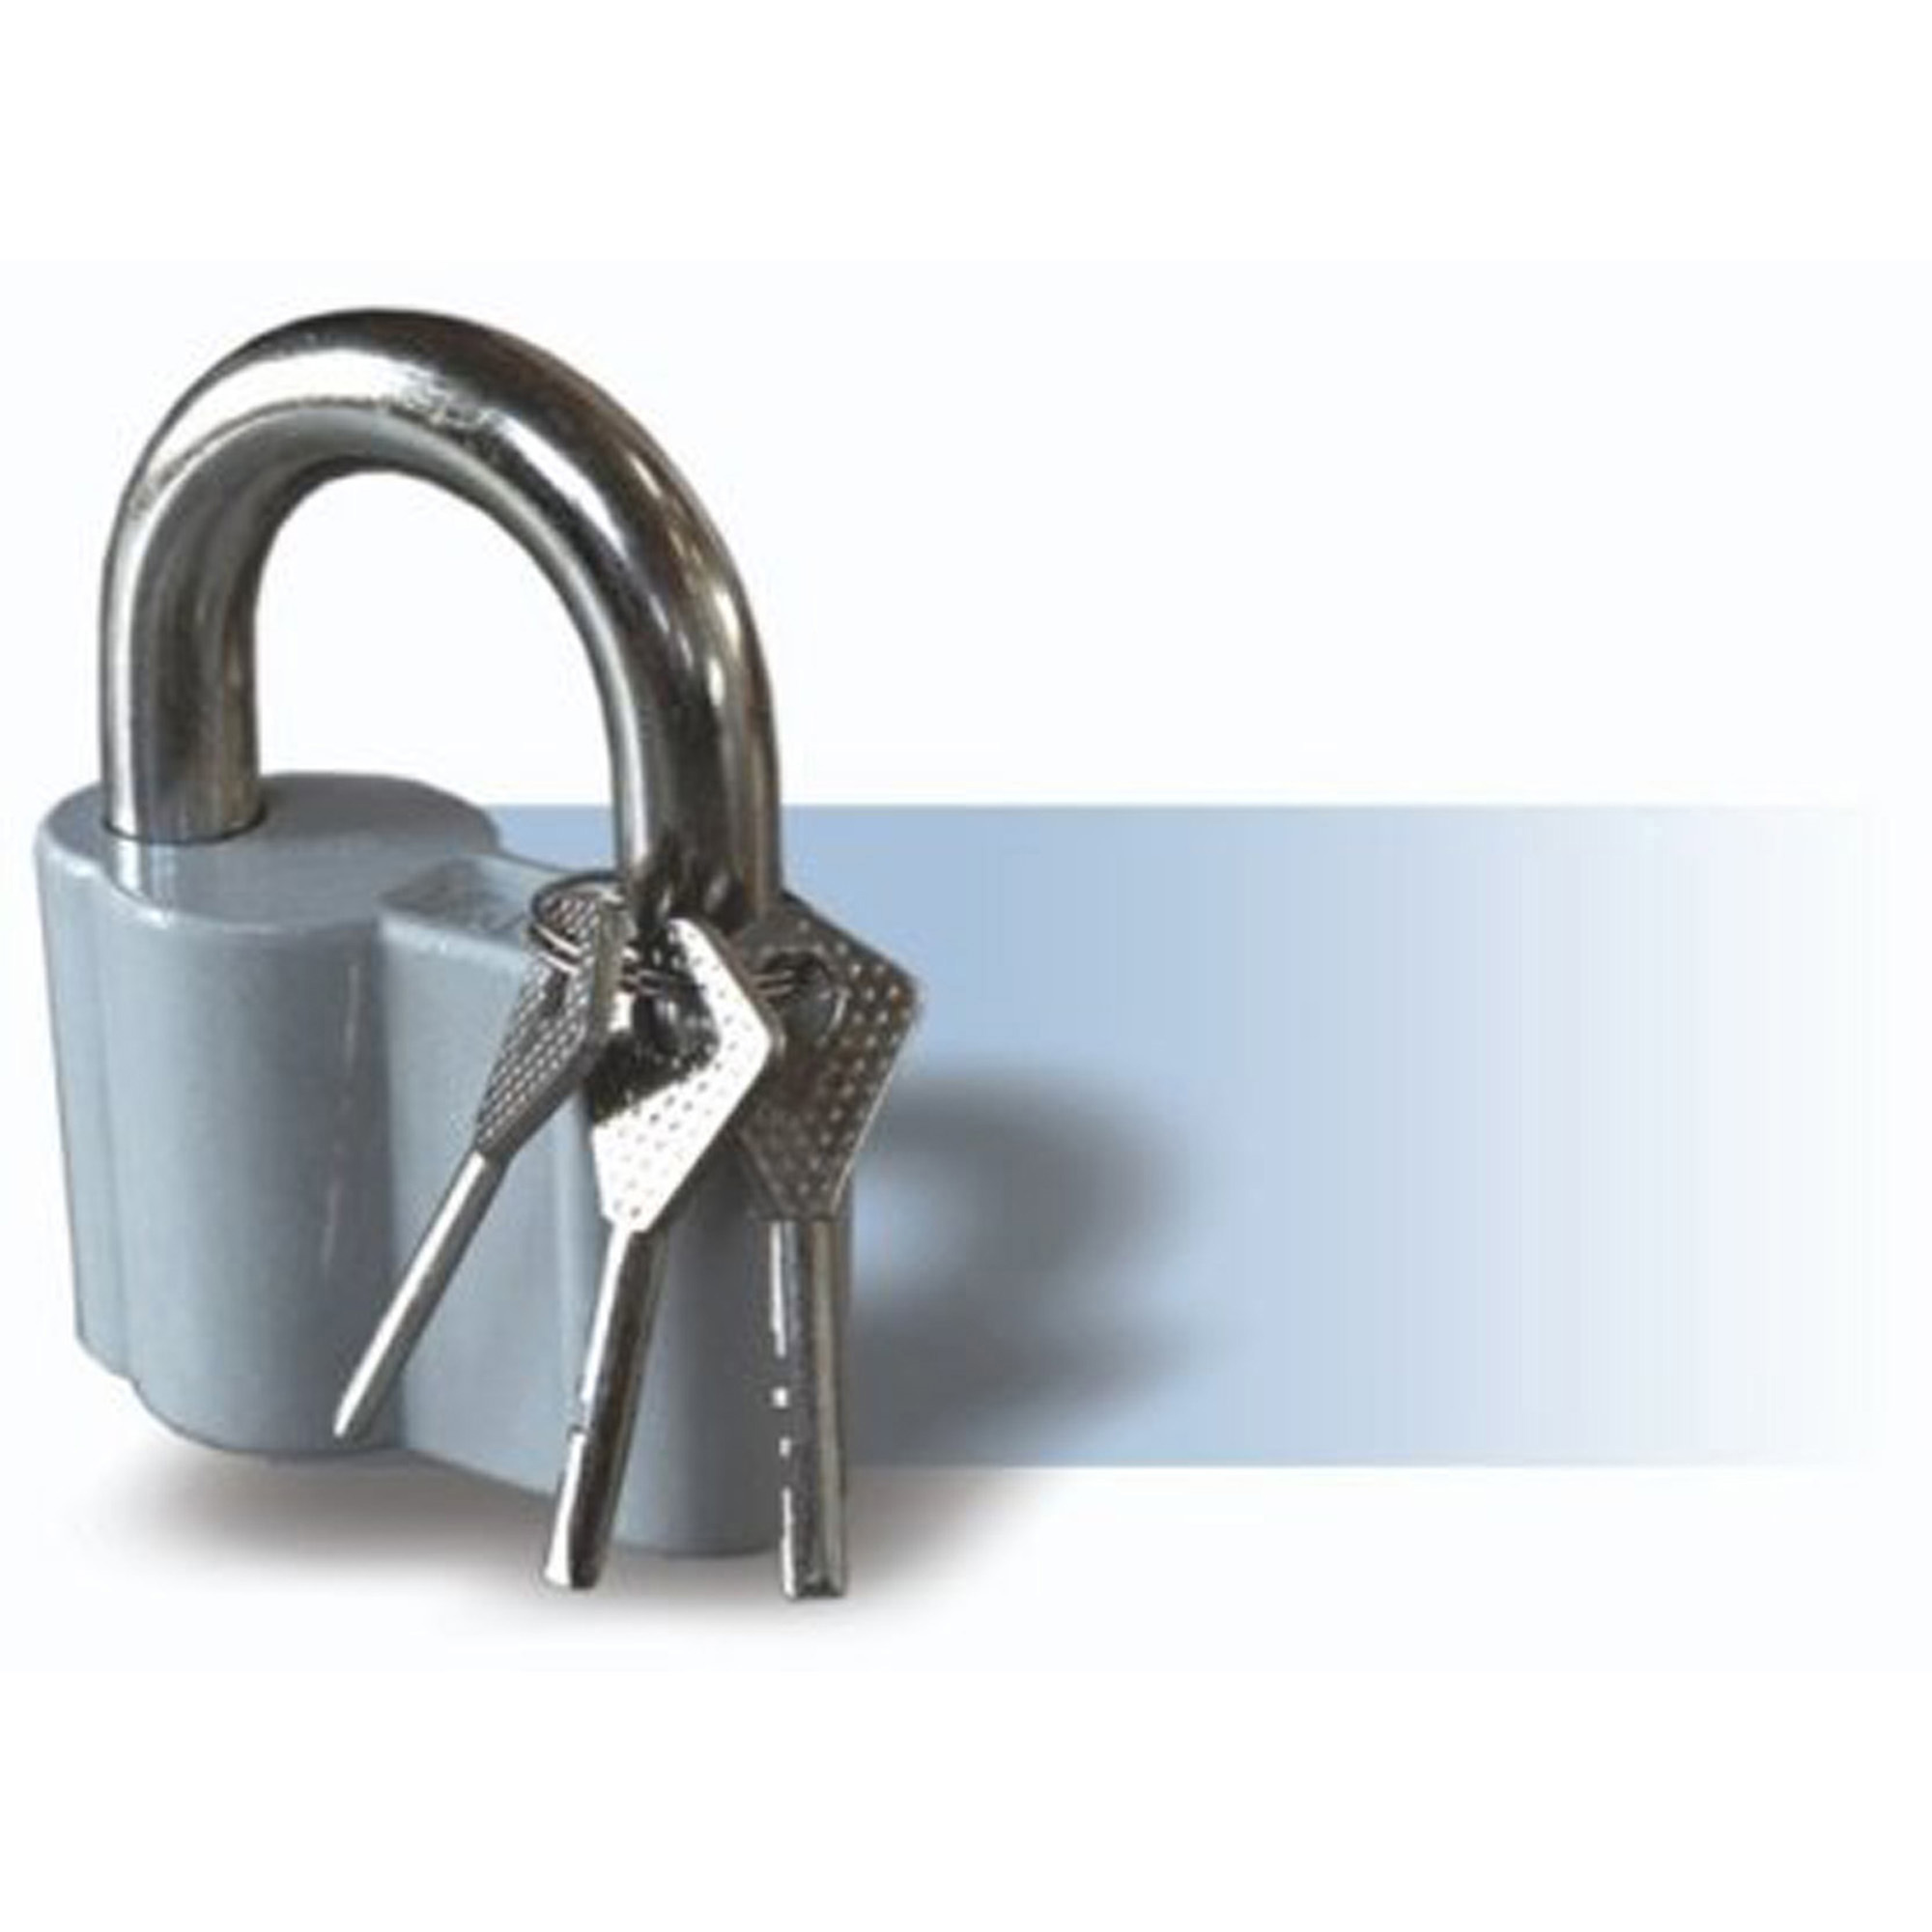 Навесной замок с ключом ЧАЗ 85071027 3 ключа Сталь по цене 630 ₽/шт .